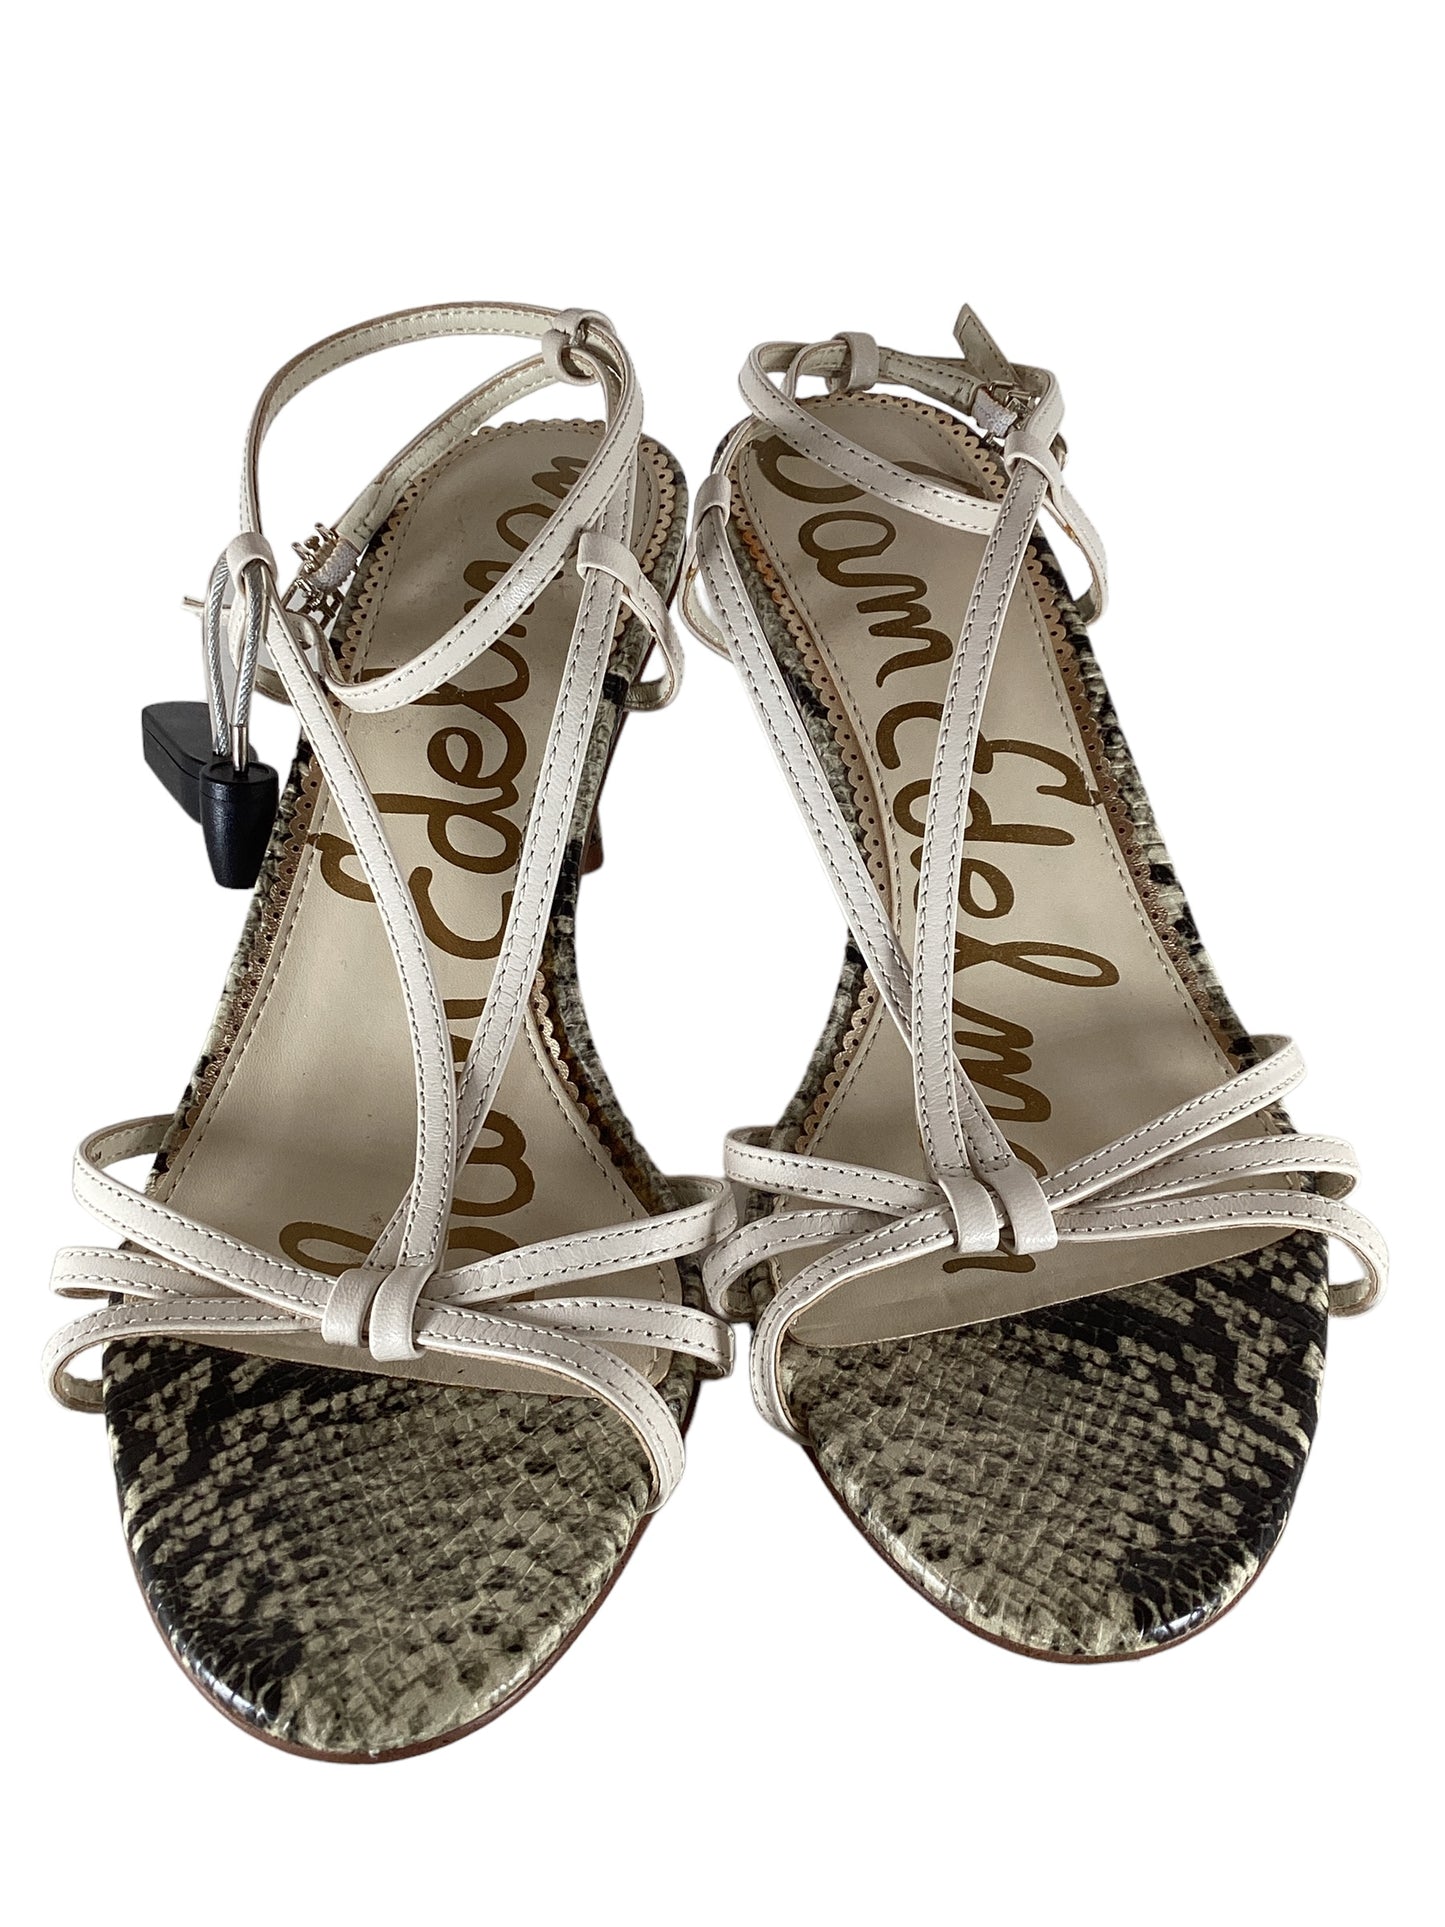 Sandals Heels Stiletto By Sam Edelman  Size: 8.5